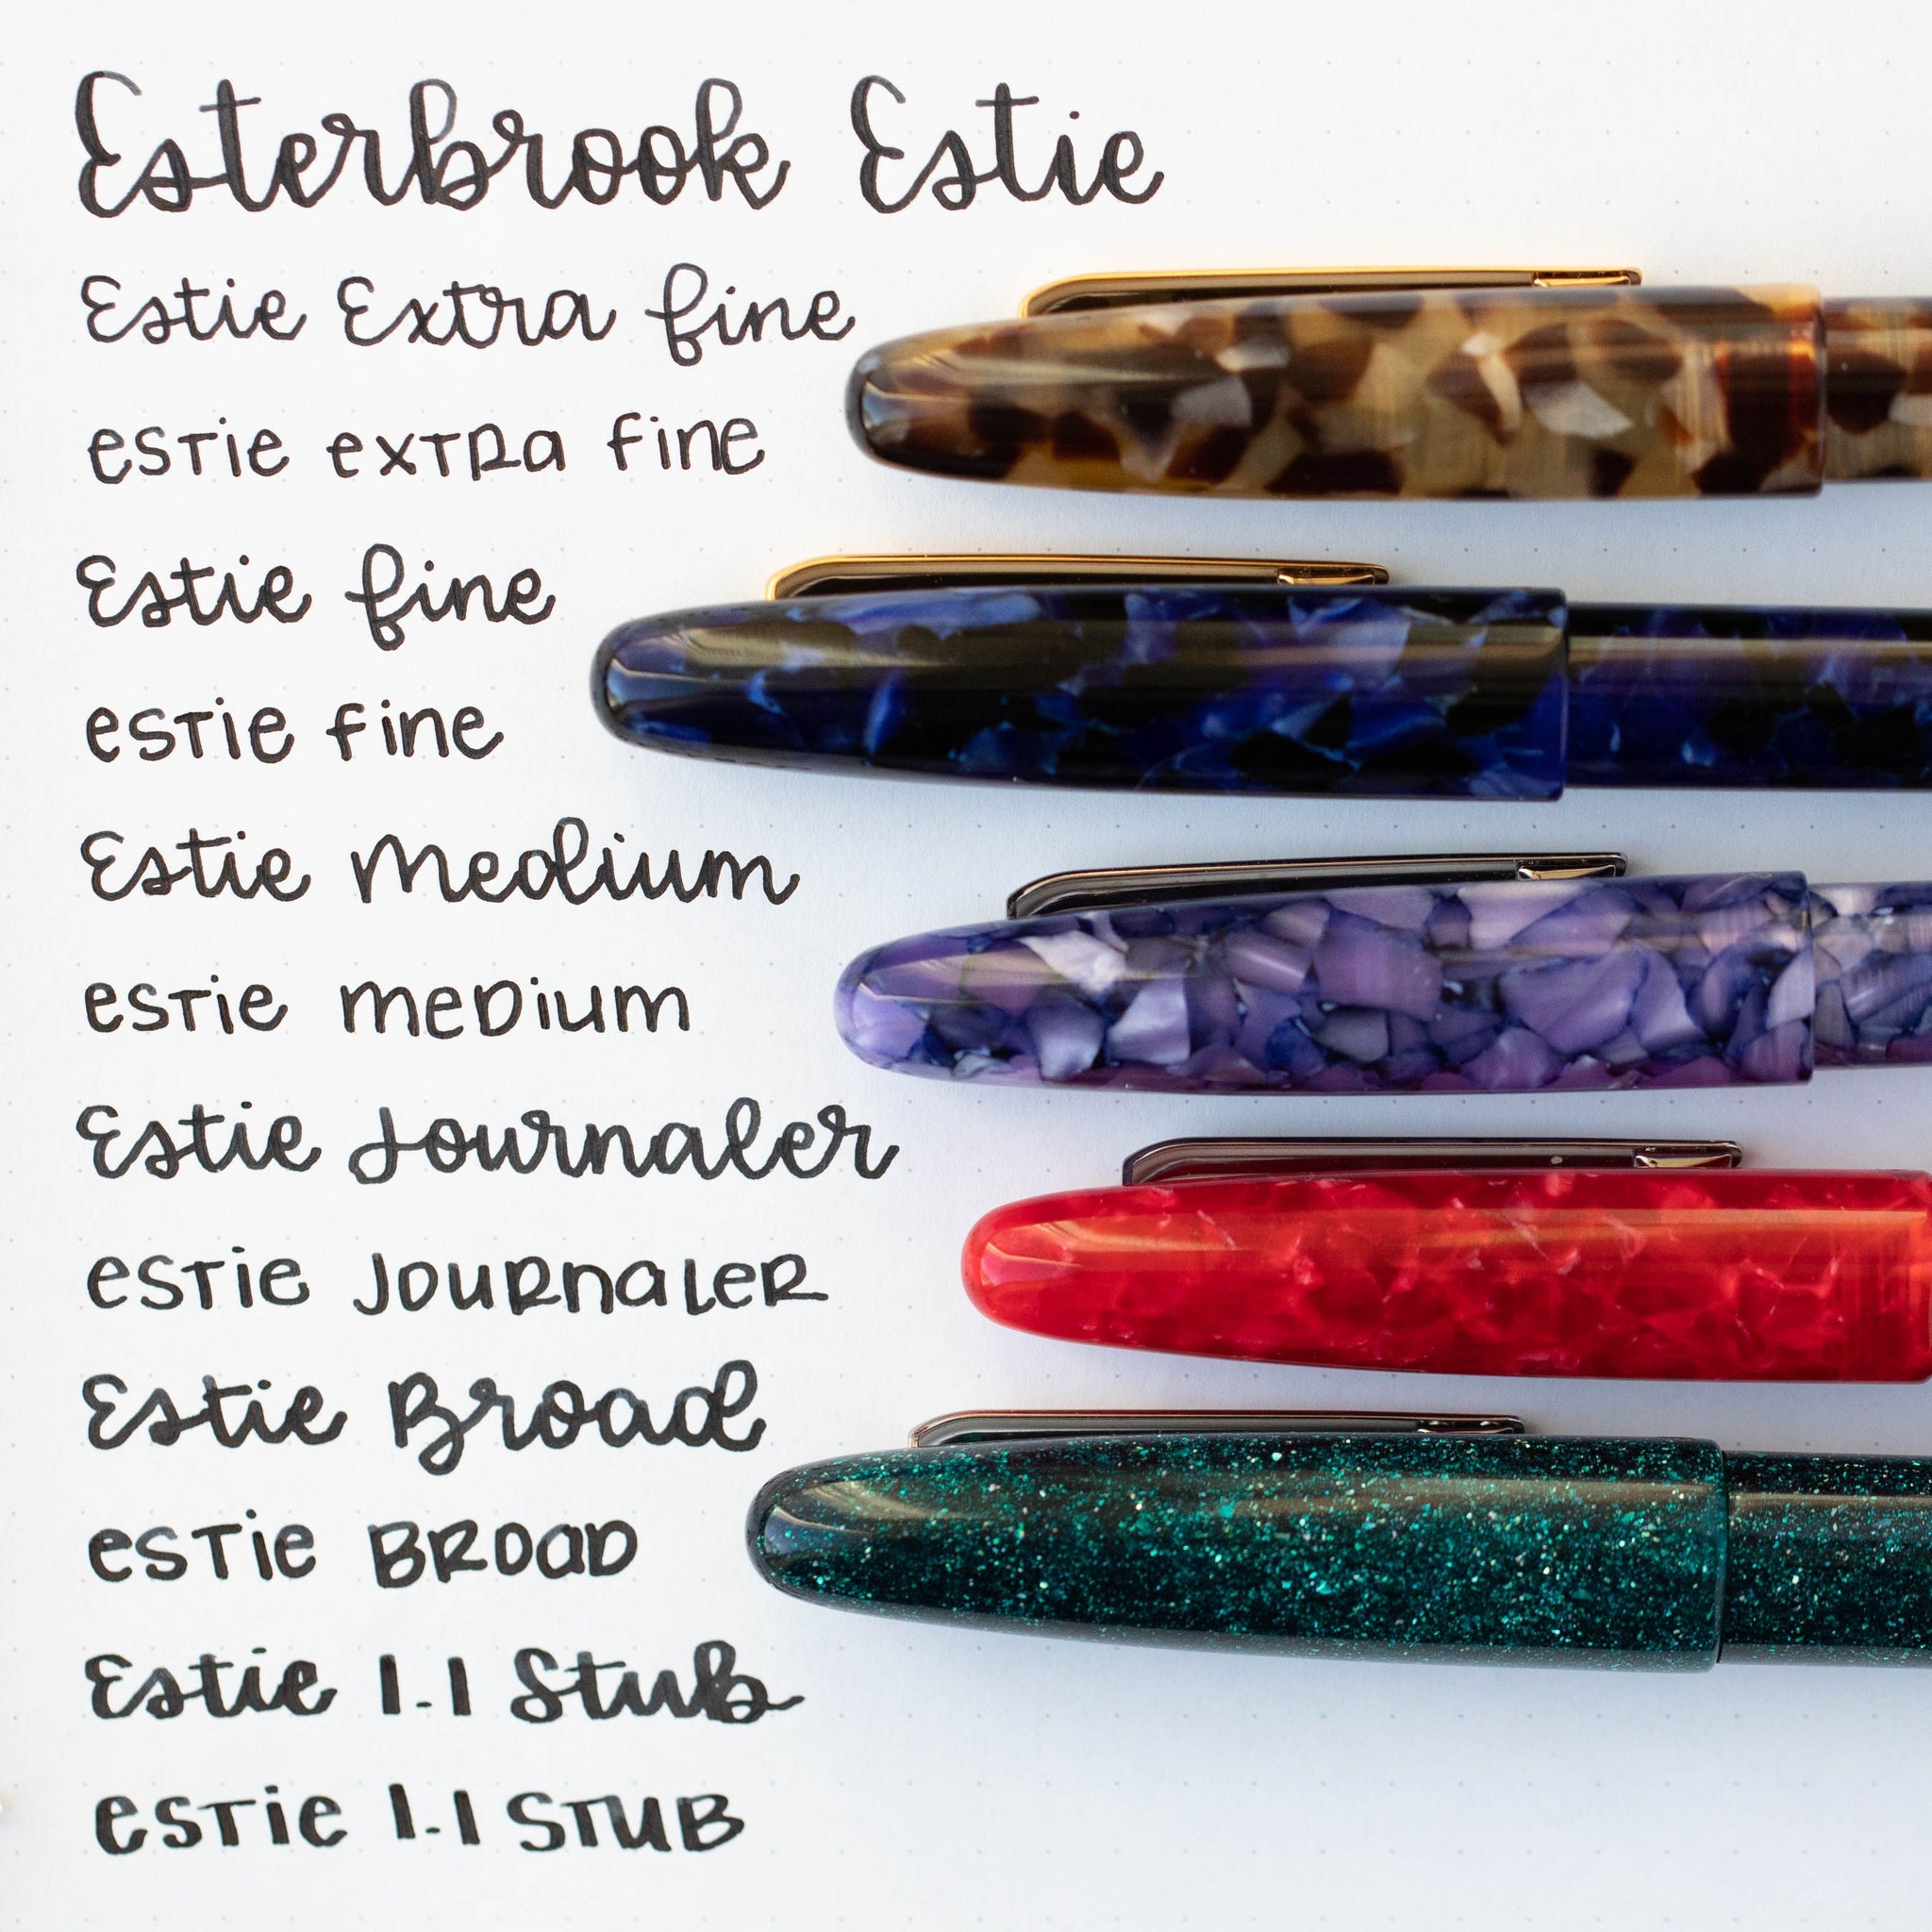 Esterbrook - Fountain Pen Estie Honeycomb (Oversized)